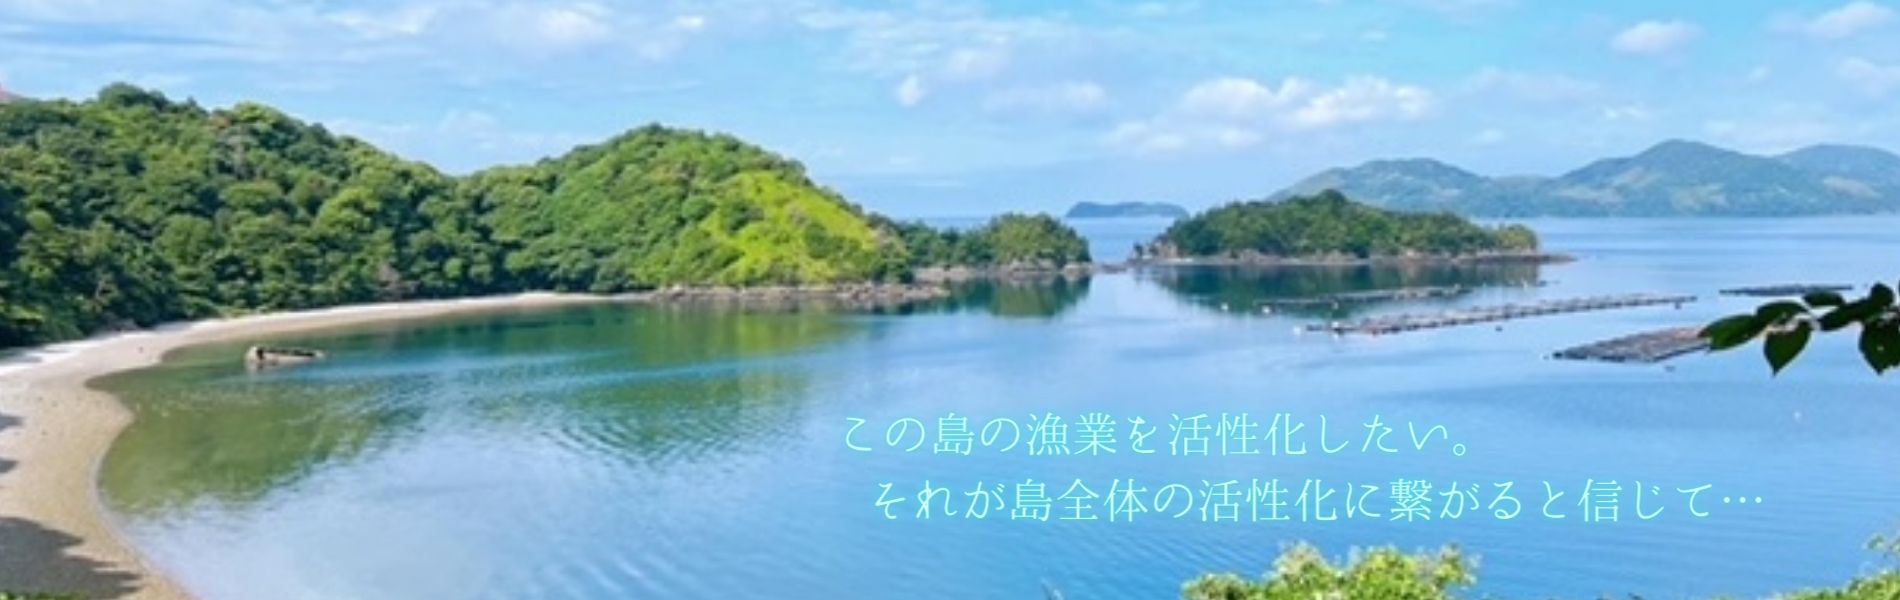 笠戸島夕日岬の風景